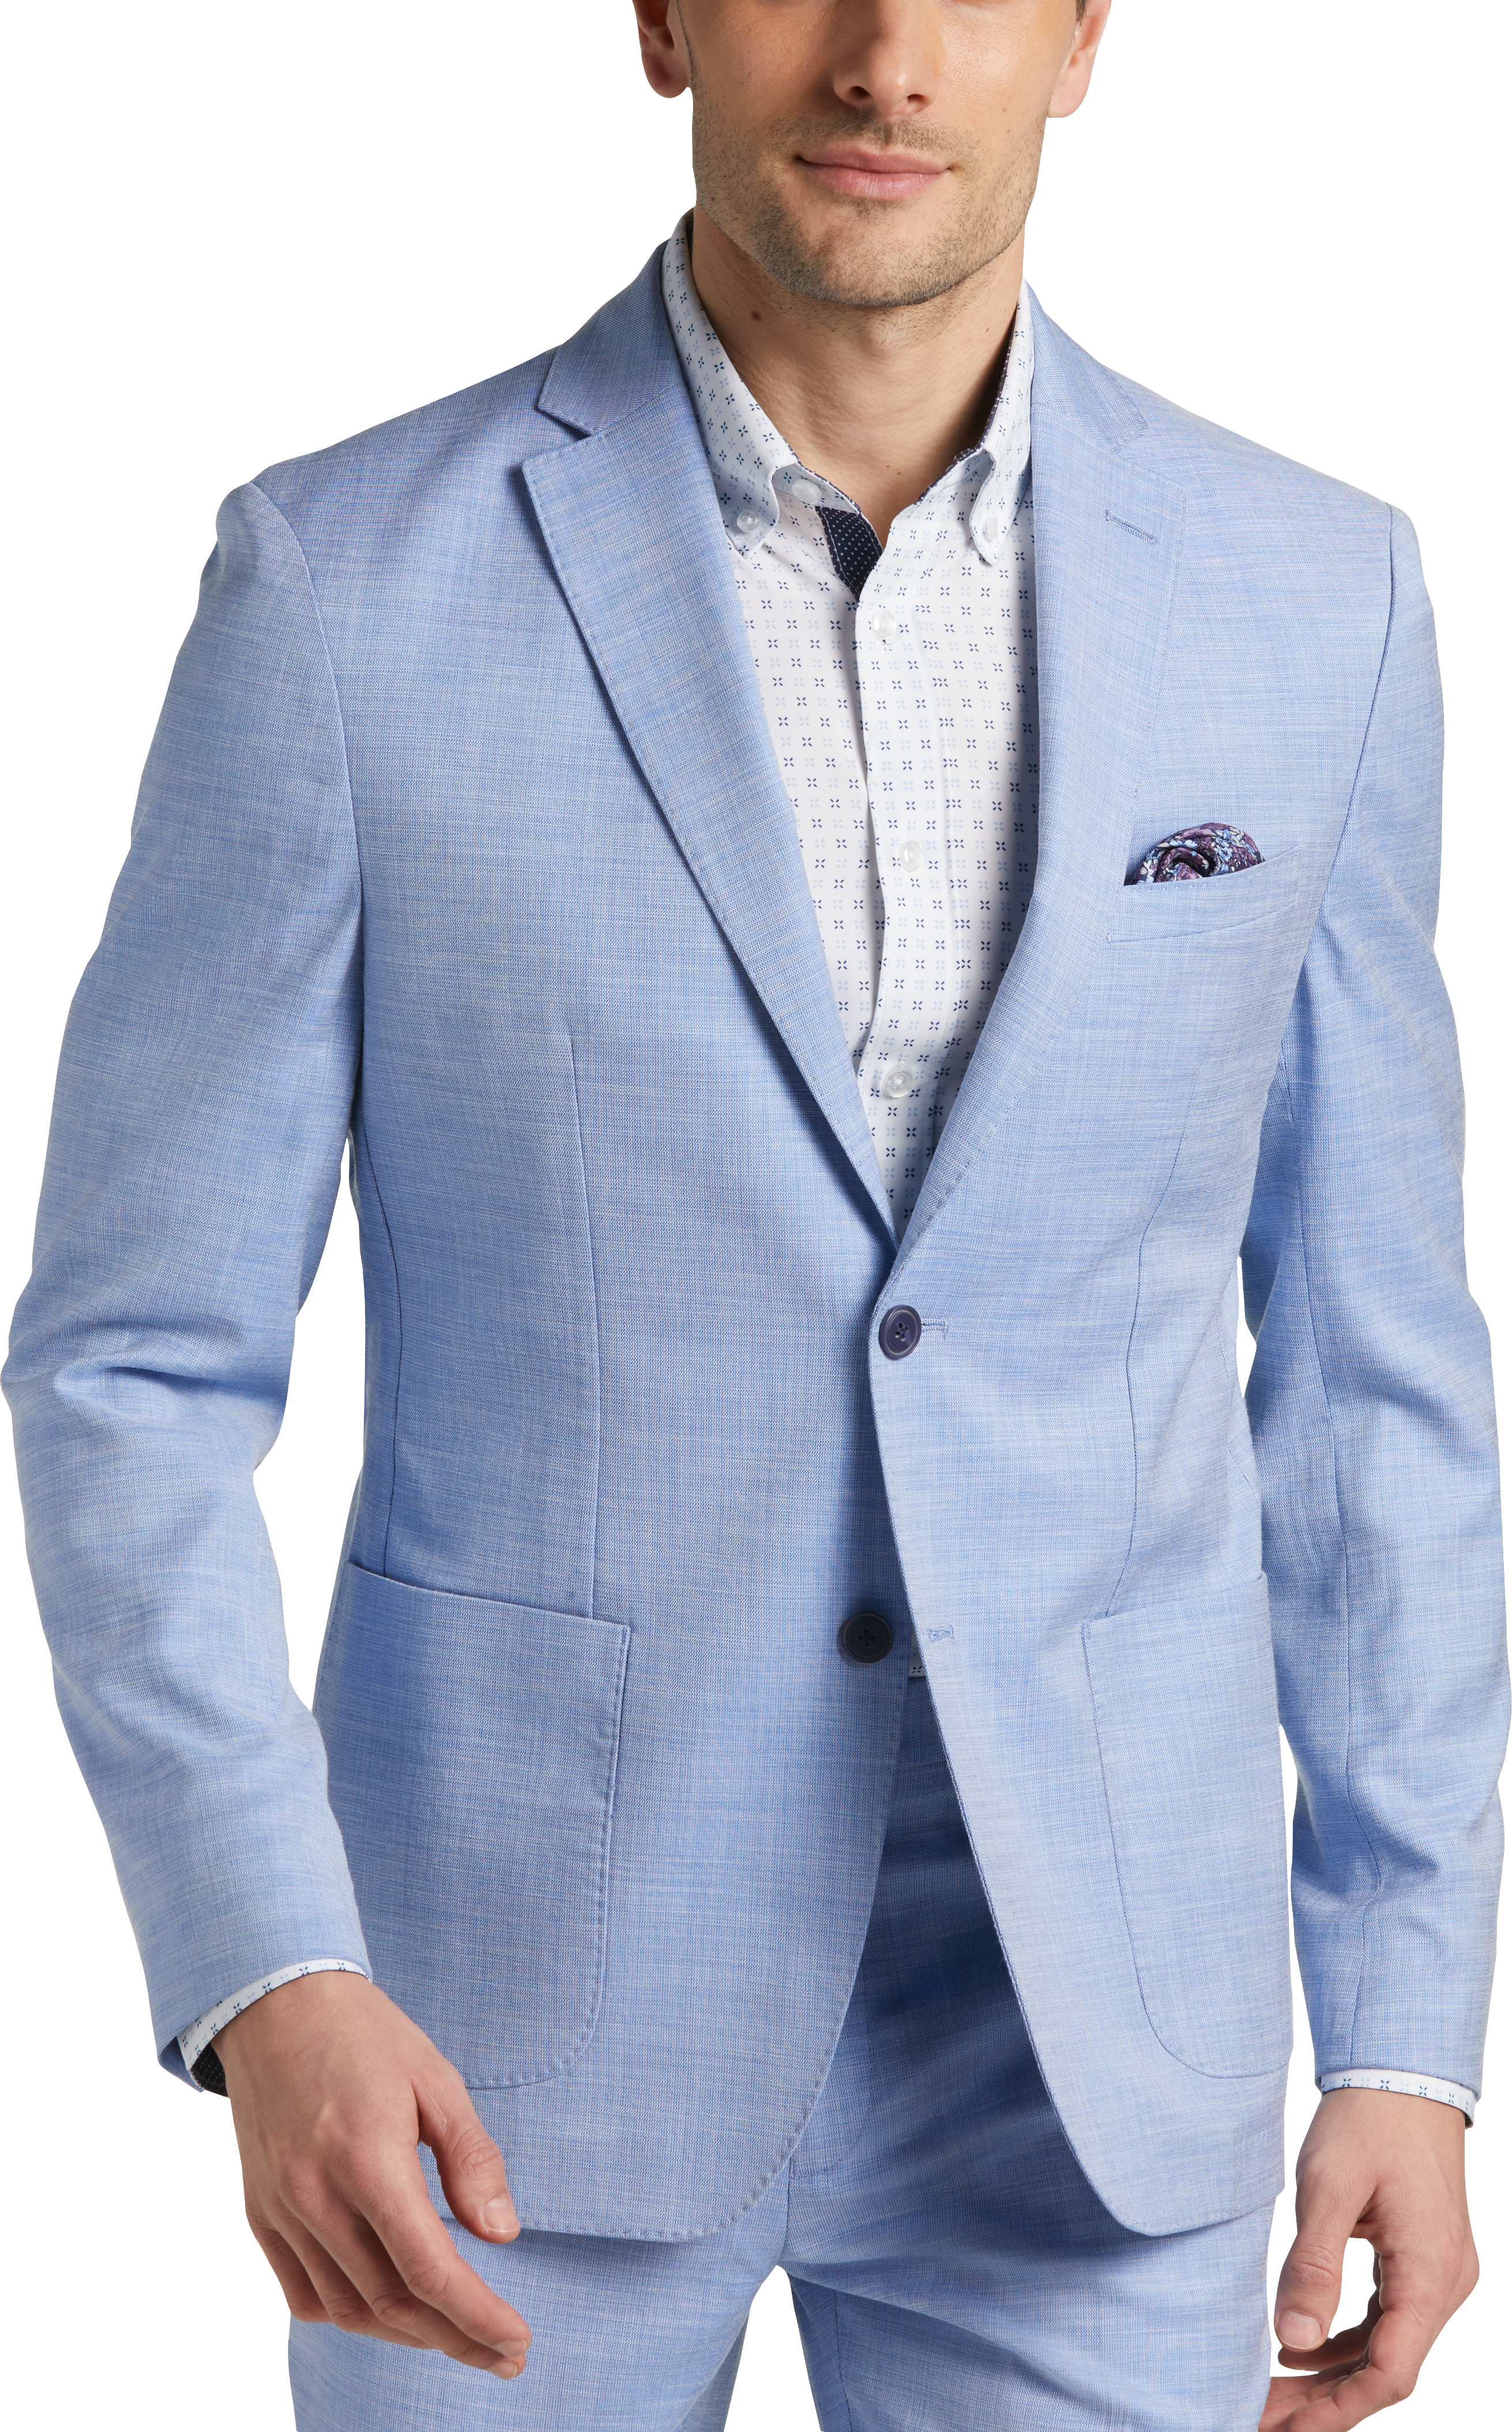 Michael Kors Modern Fit Suit Separates, Light Blue - Men's Suits Men's